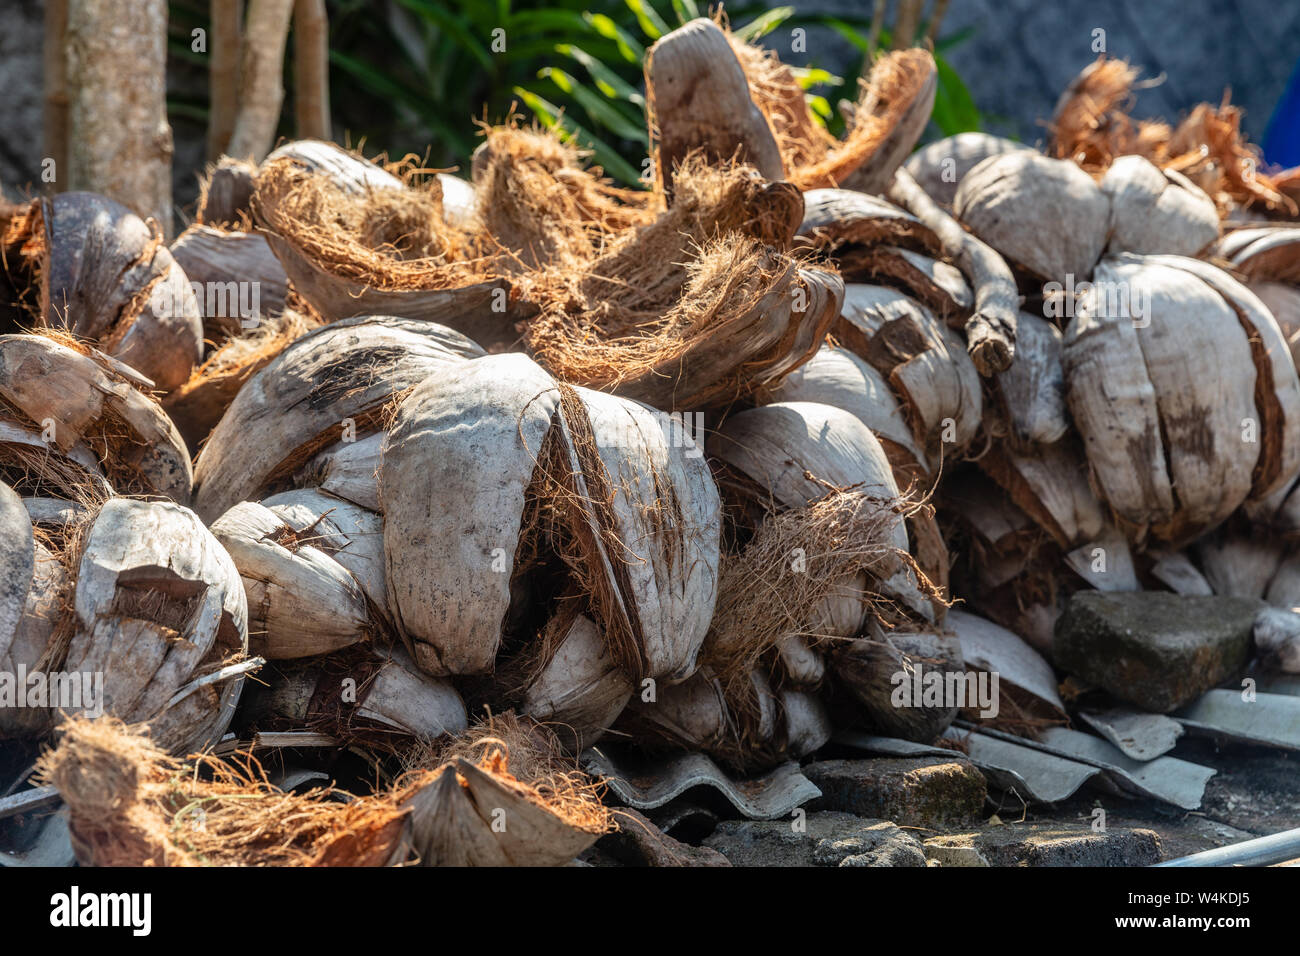 Buccia di cocco in essiccazione del villaggio di carbone per rendere sate indonesiano. Bali, Indonesia. Foto Stock